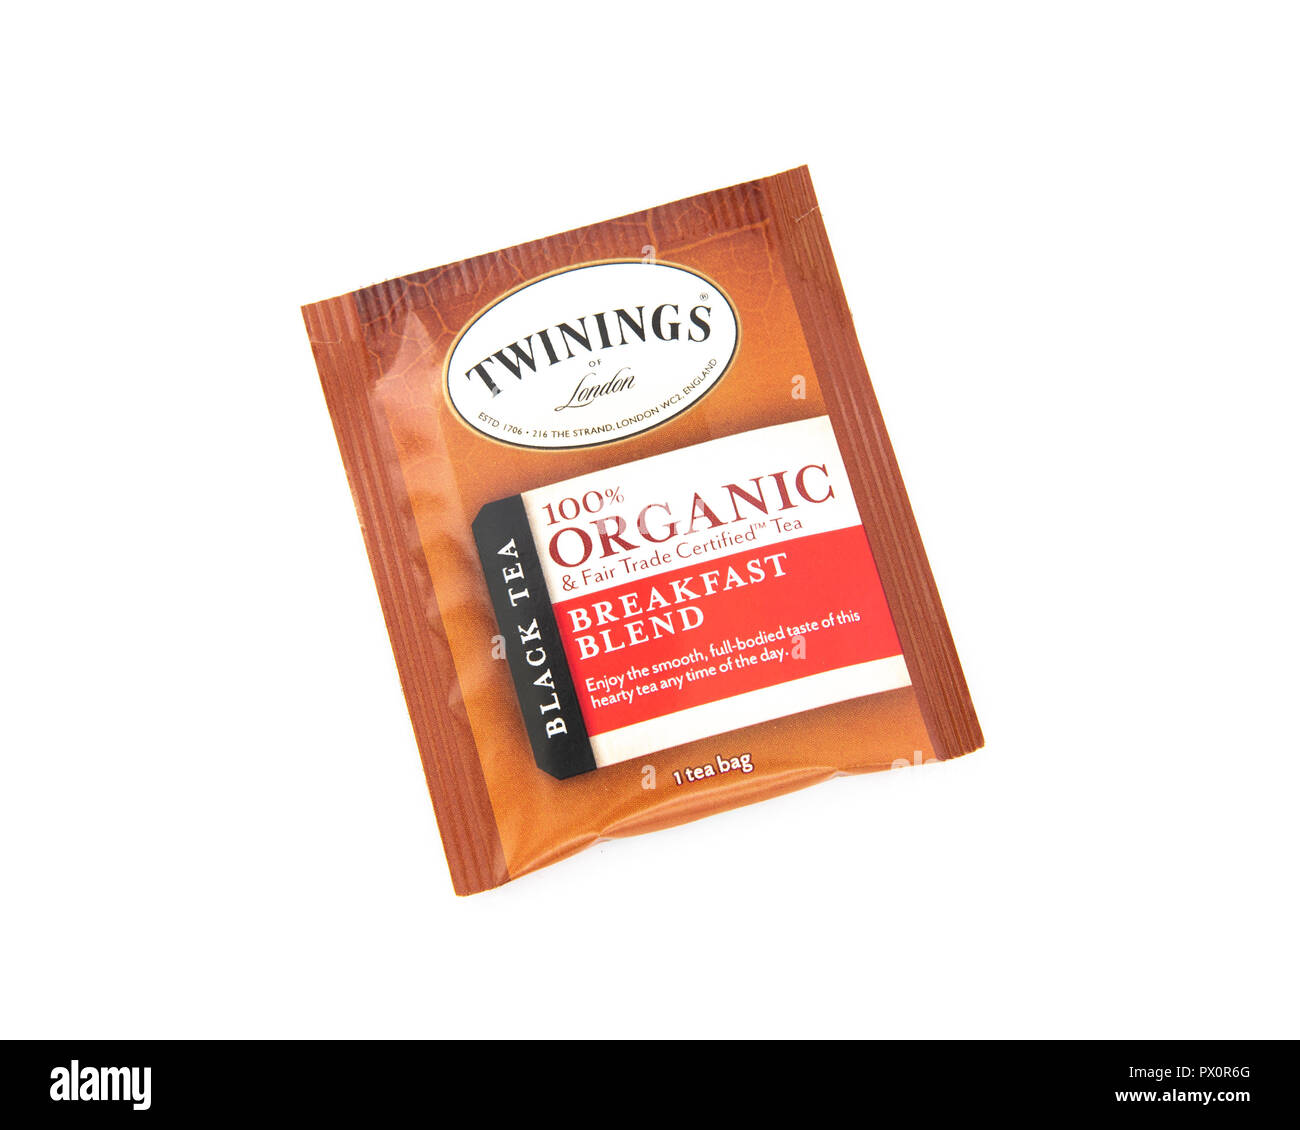 Una bolsa de té de Twinings de Londres 100% puro negro descafeinado té Desayuno Inglés envuelto en una bolsa de aluminio para preservar su frescura. Foto de stock